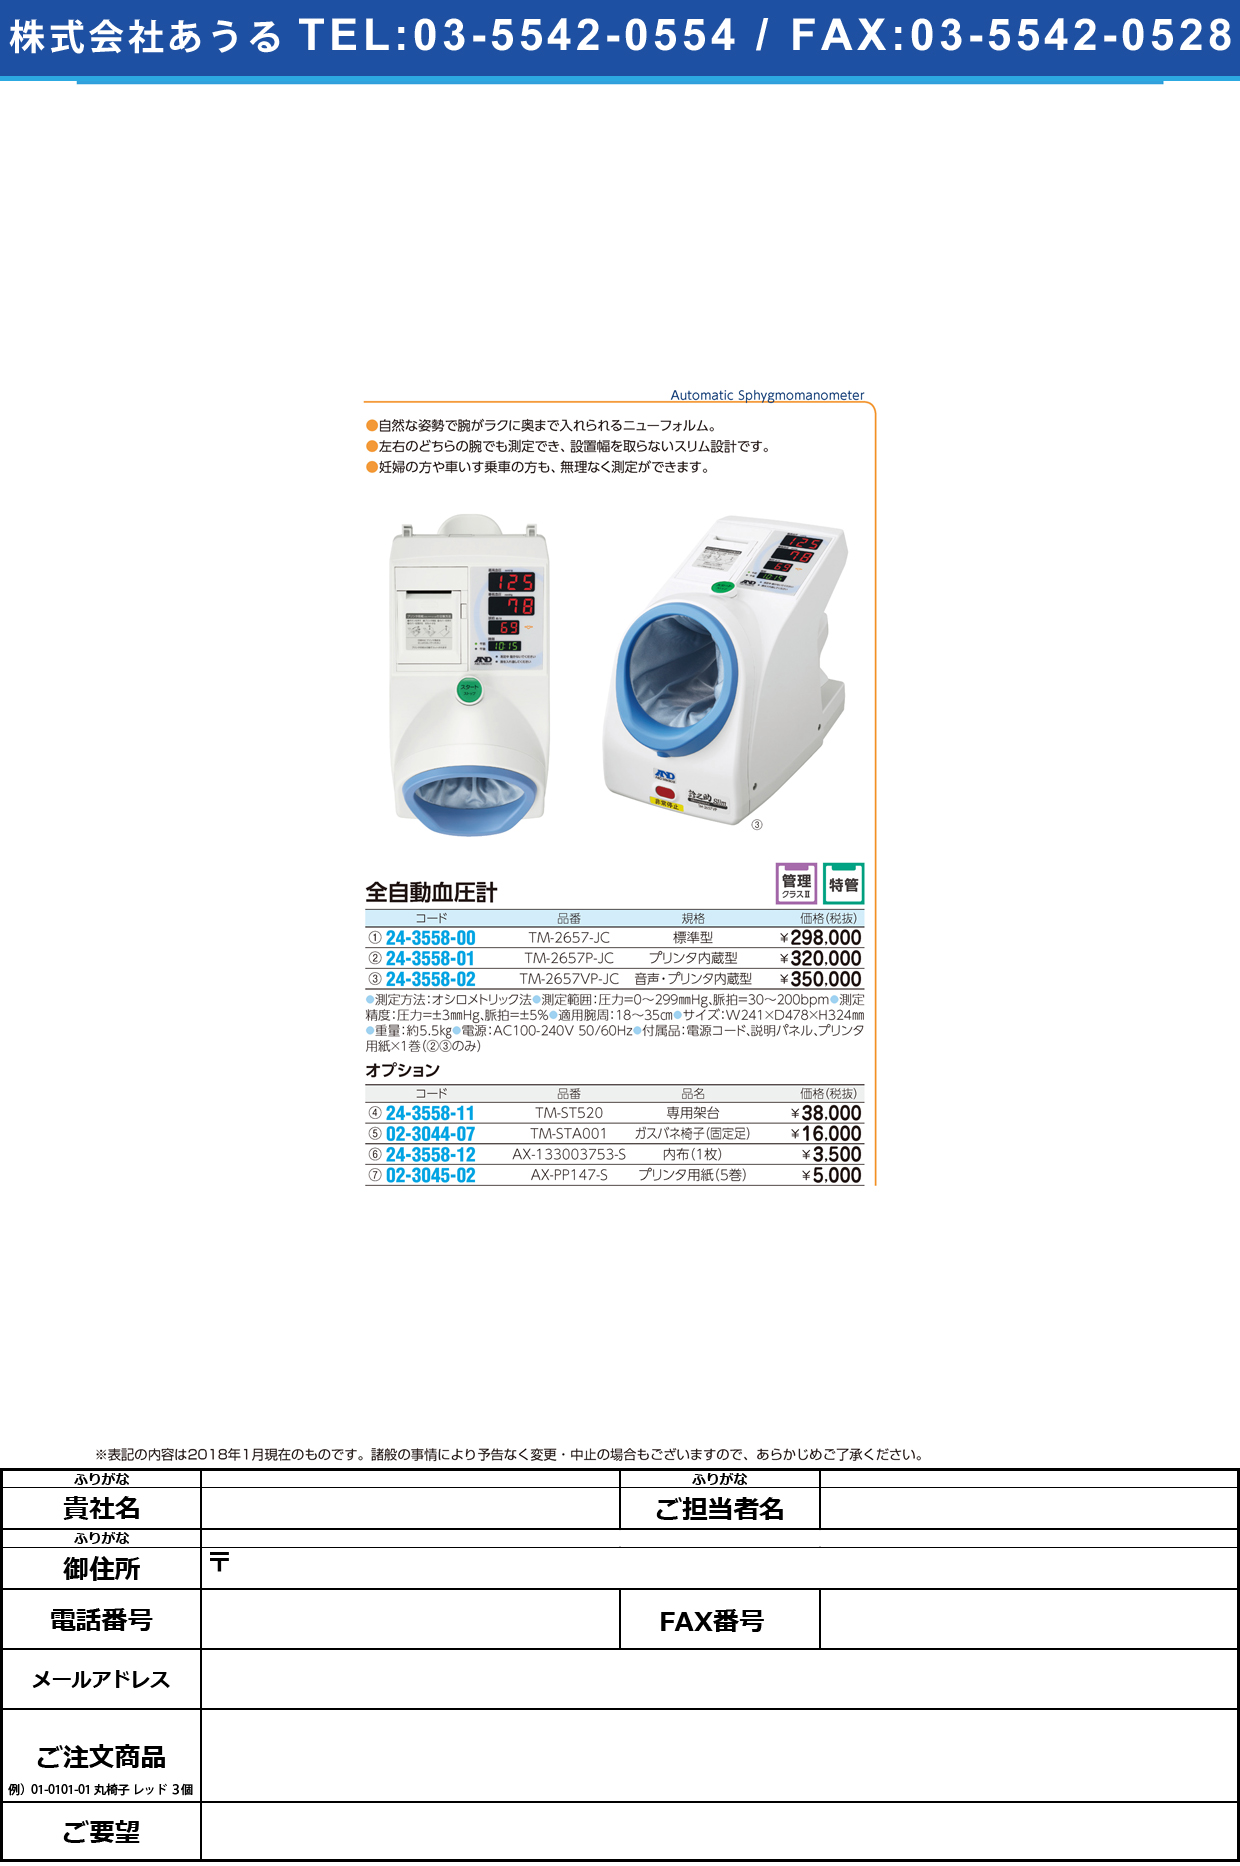 (24-3558-00)全自動血圧計（標準型） TM-2657-JC ｾﾞﾝｼﾞﾄﾞｳｹﾂｱﾂｹｲ(エー・アンド・デイ)【1台単位】【2018年カタログ商品】